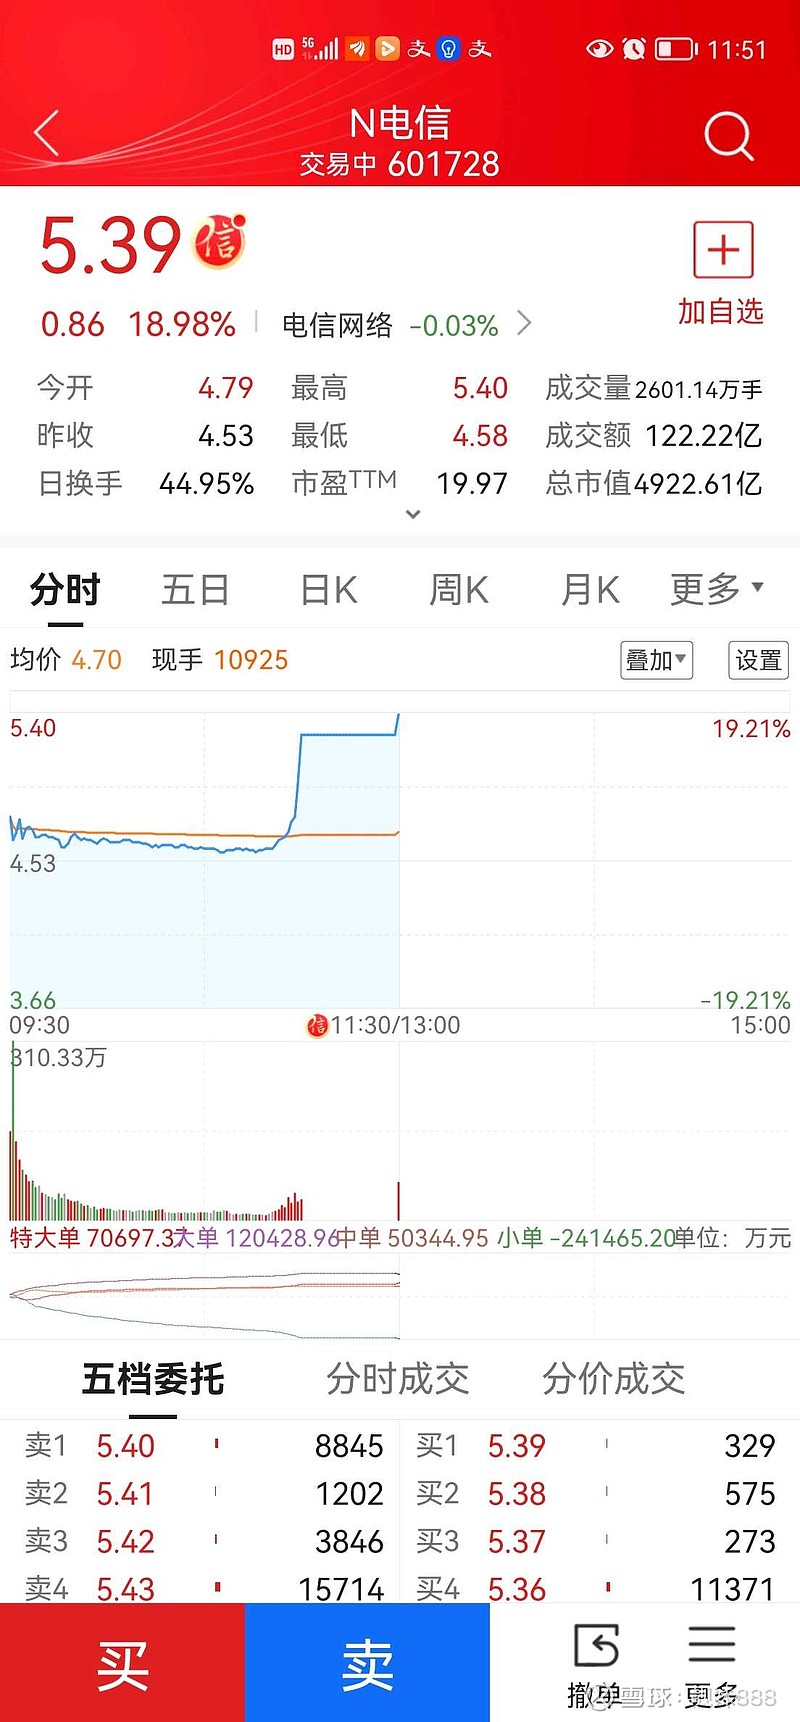 今天A股 中国电信 盘中居然涨